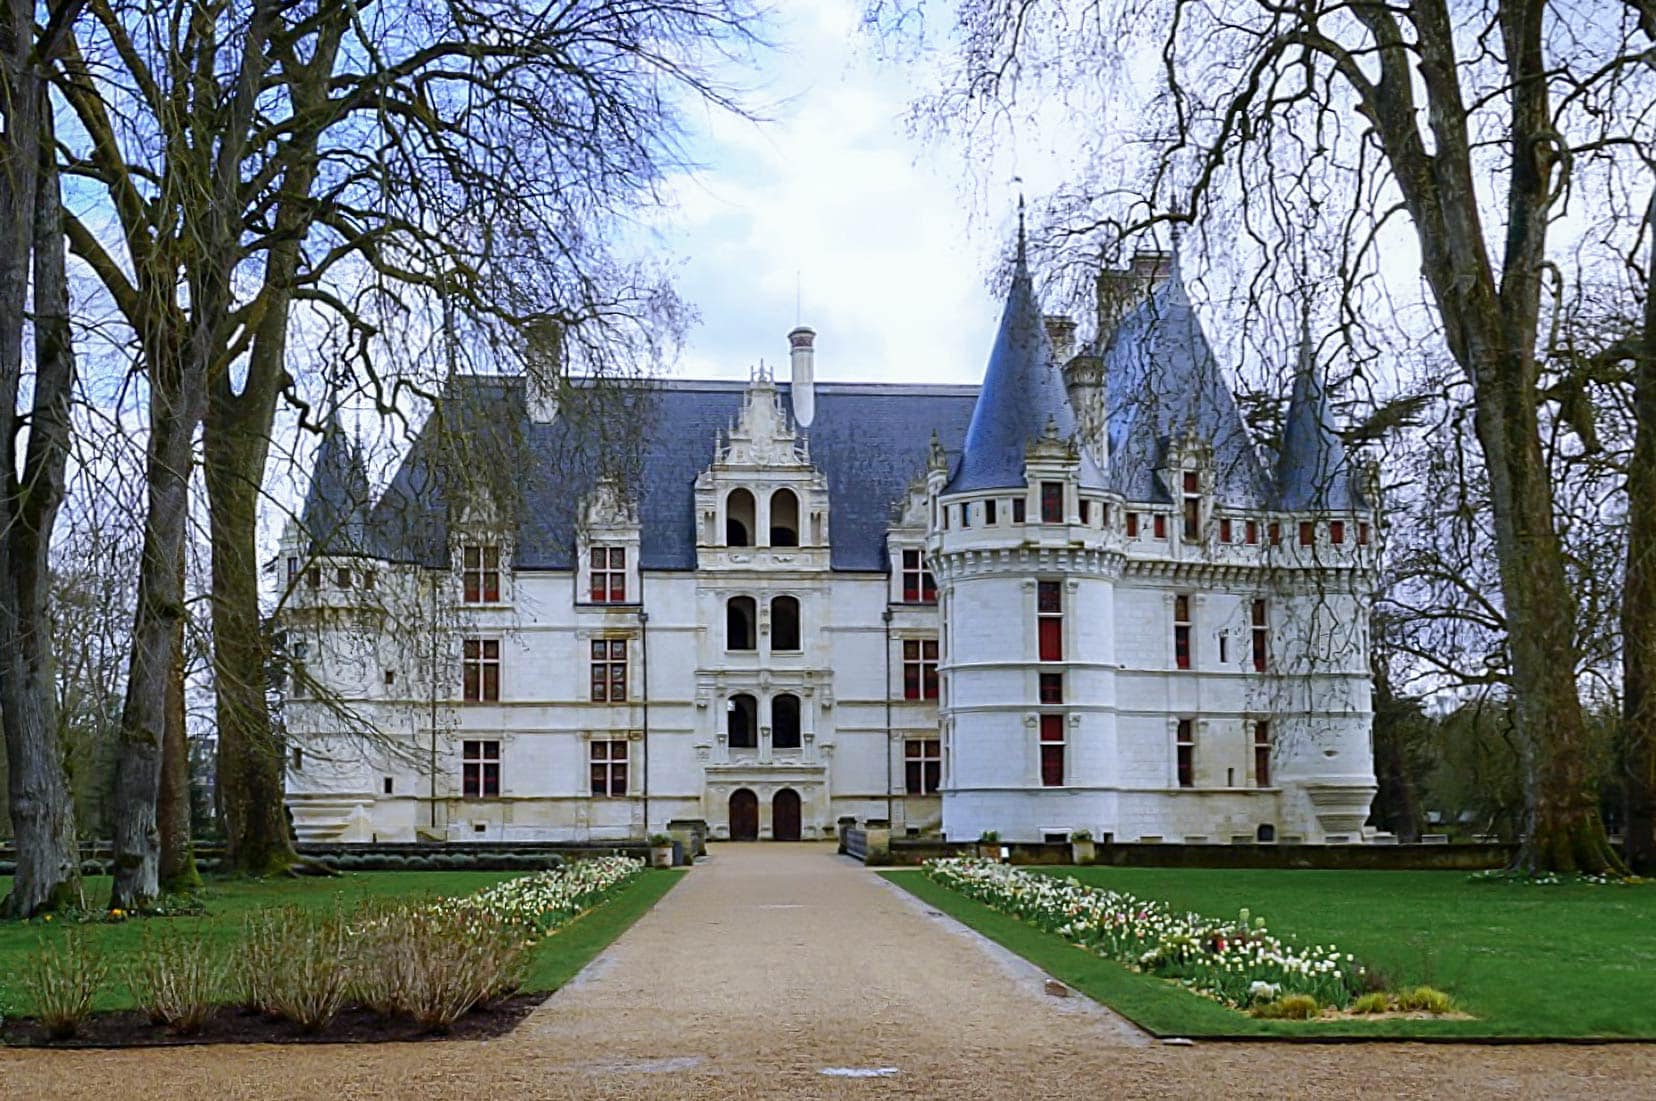 The pretty Chateau d’Azay-le-Rideau